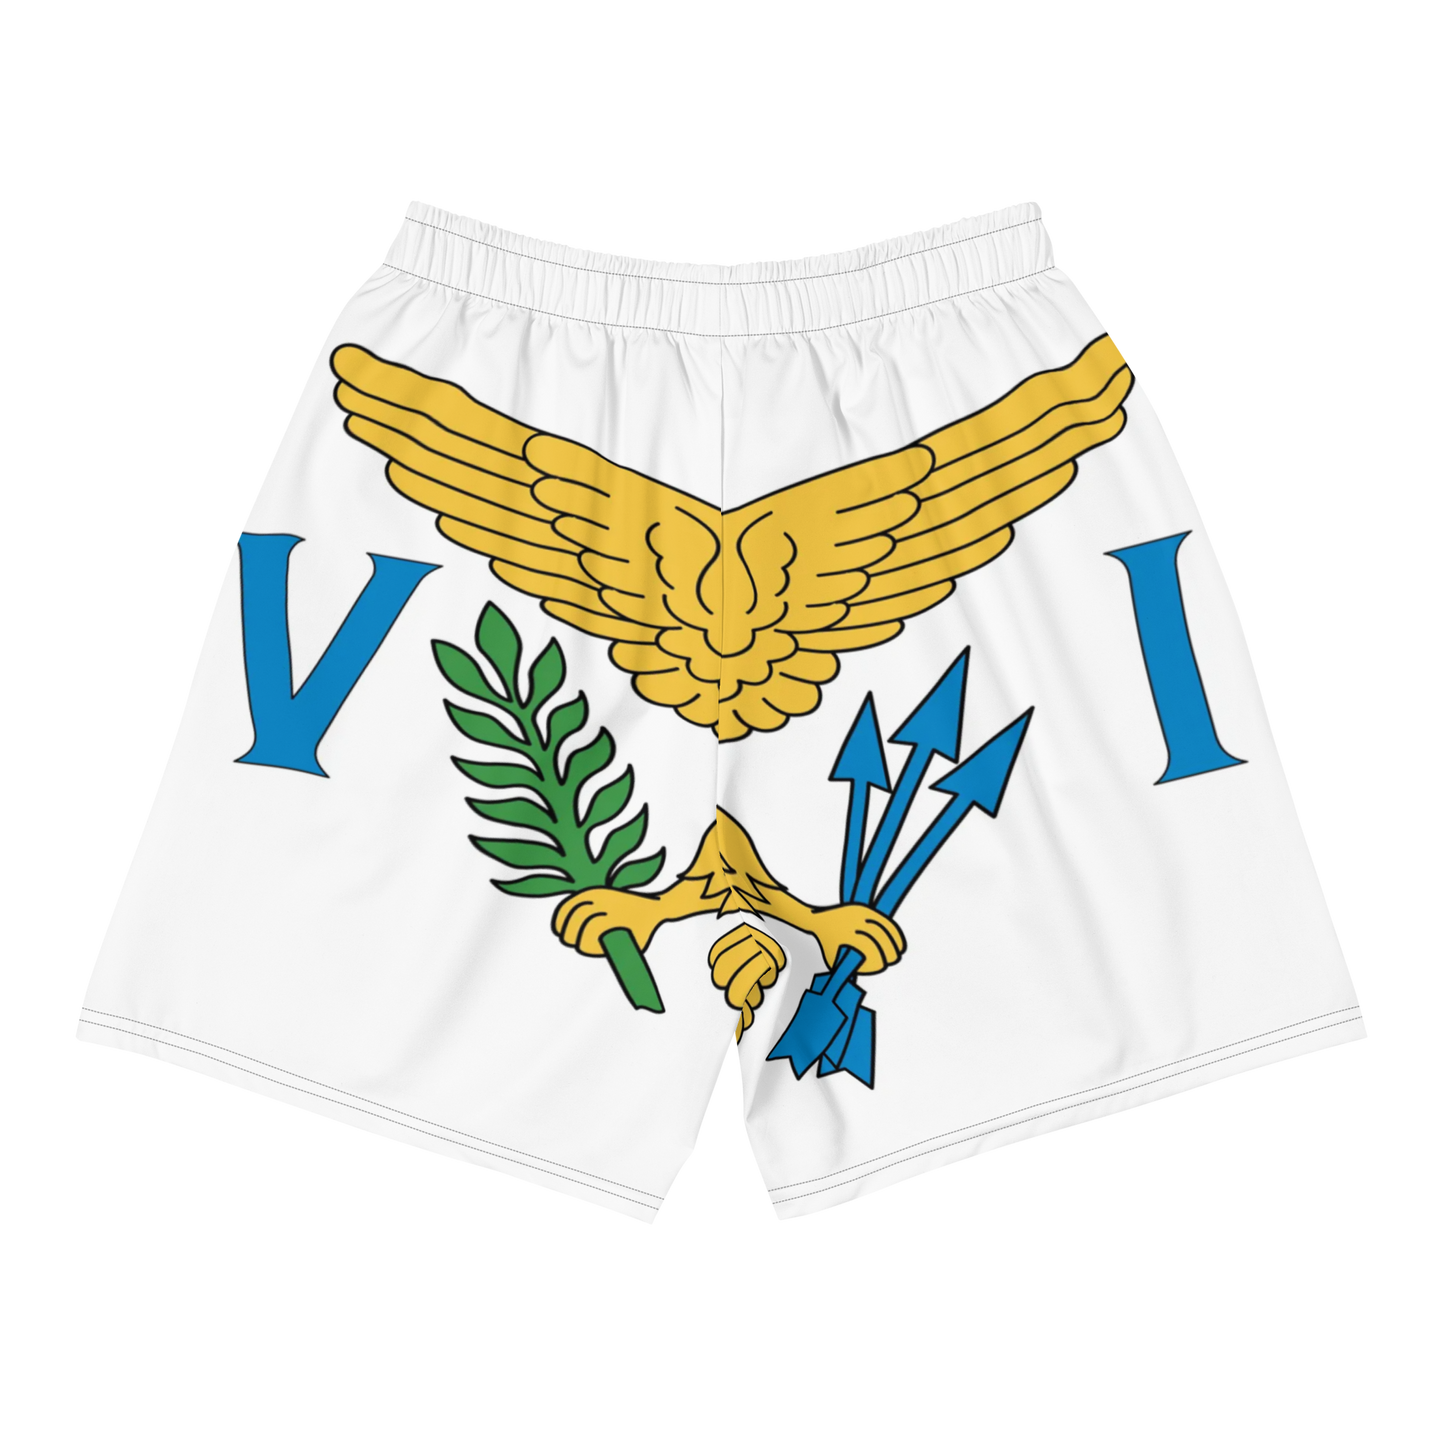 USVI Men's Athletic Shorts